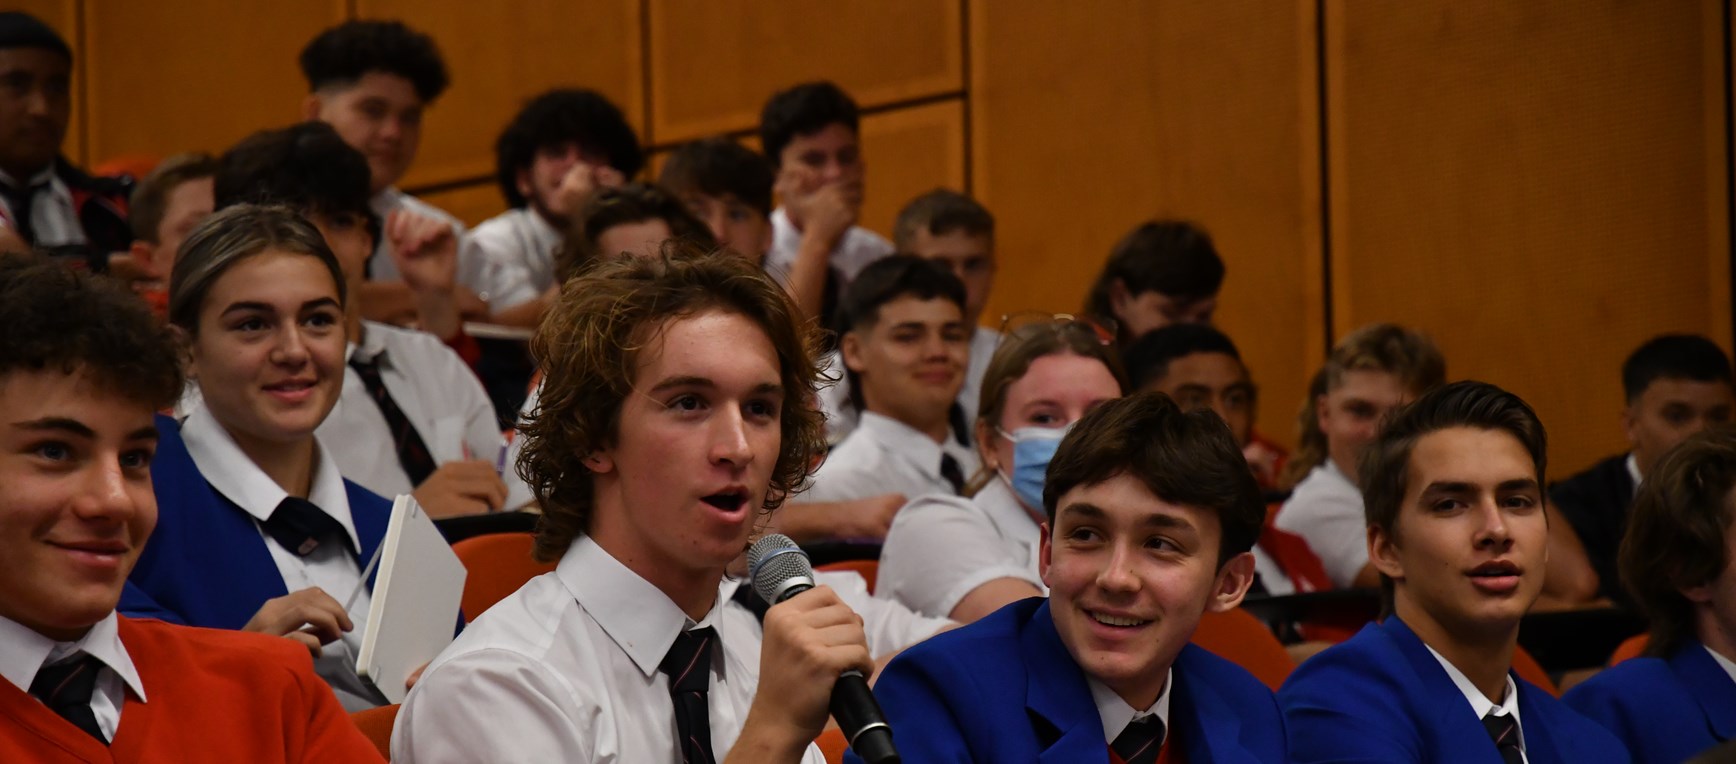 GALLERY | Blues Youth Leadership Program Western Sydney